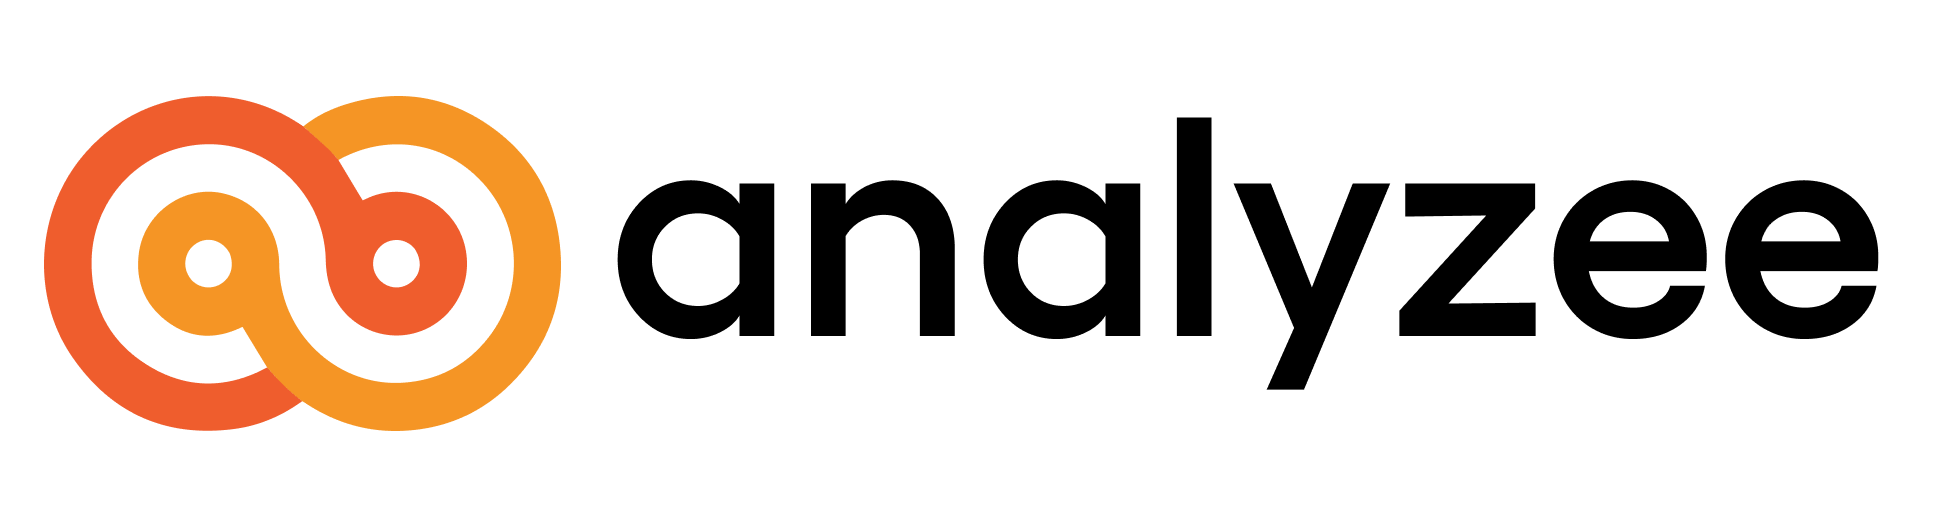 Analyzee full logo